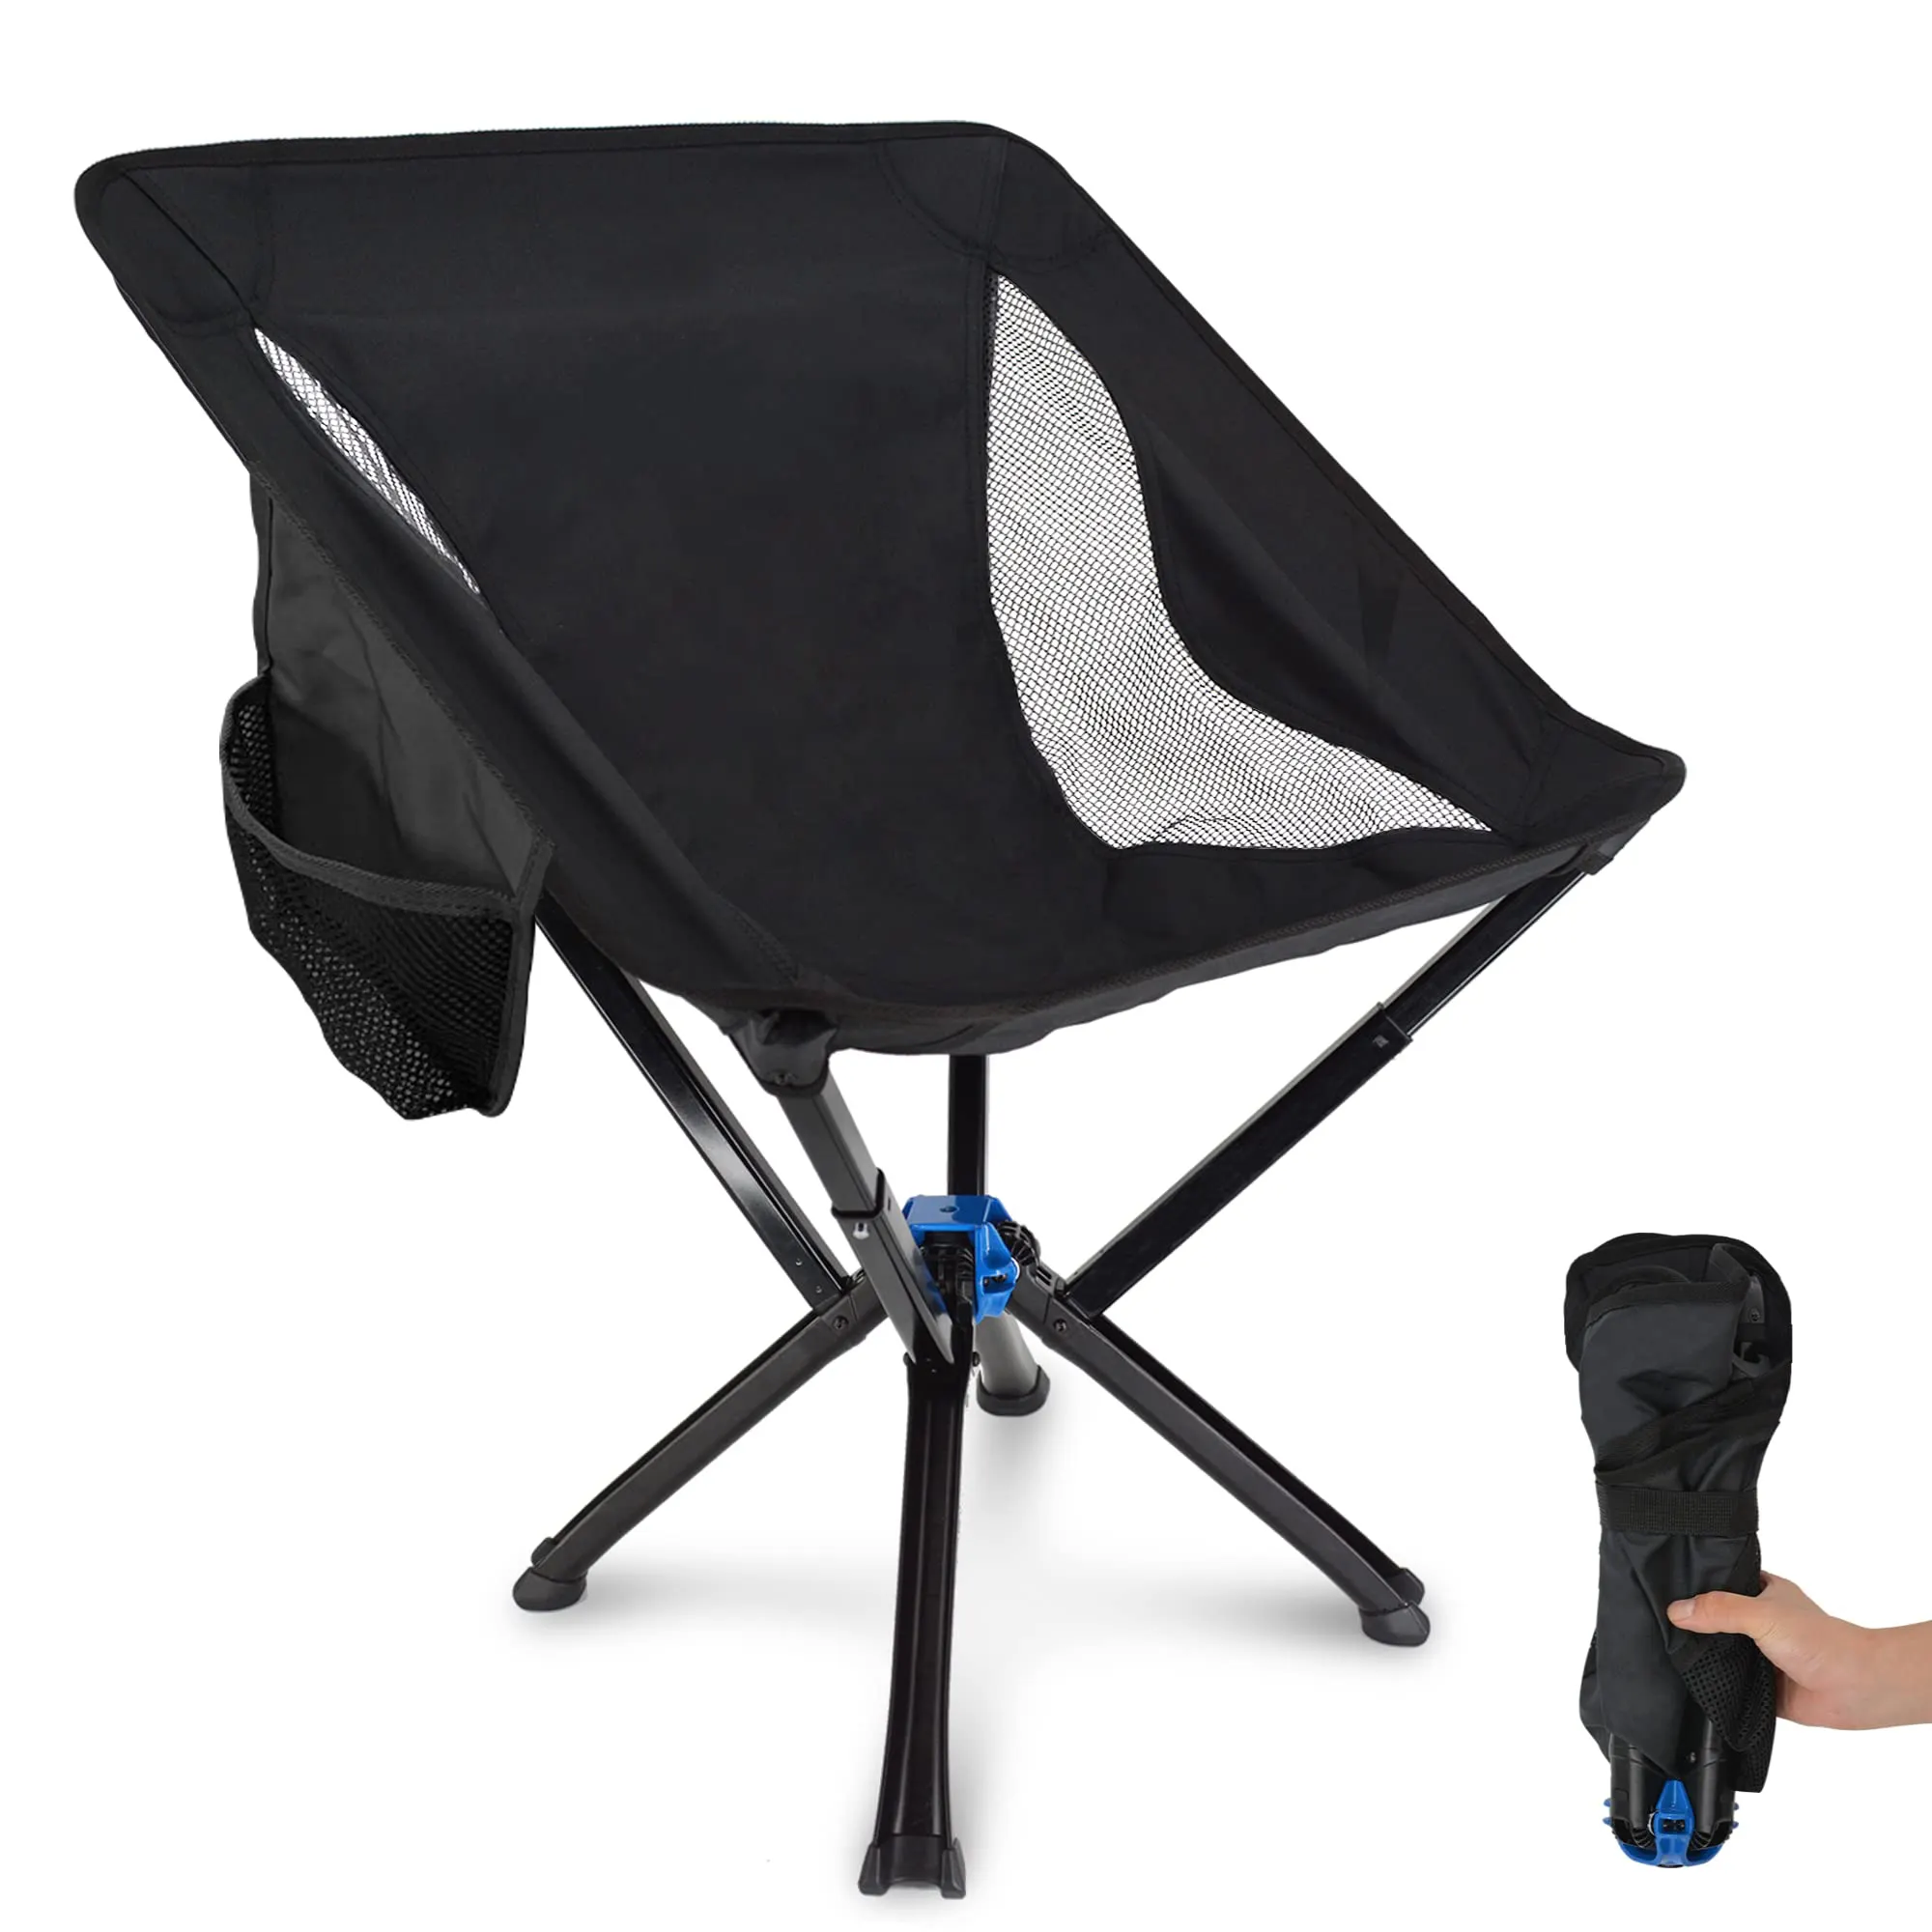 Produzione migliore vendita Cliq su misura ingranaggio leggero in alluminio esterno altro pieghevole portatile spiaggia sedia da campeggio pesca